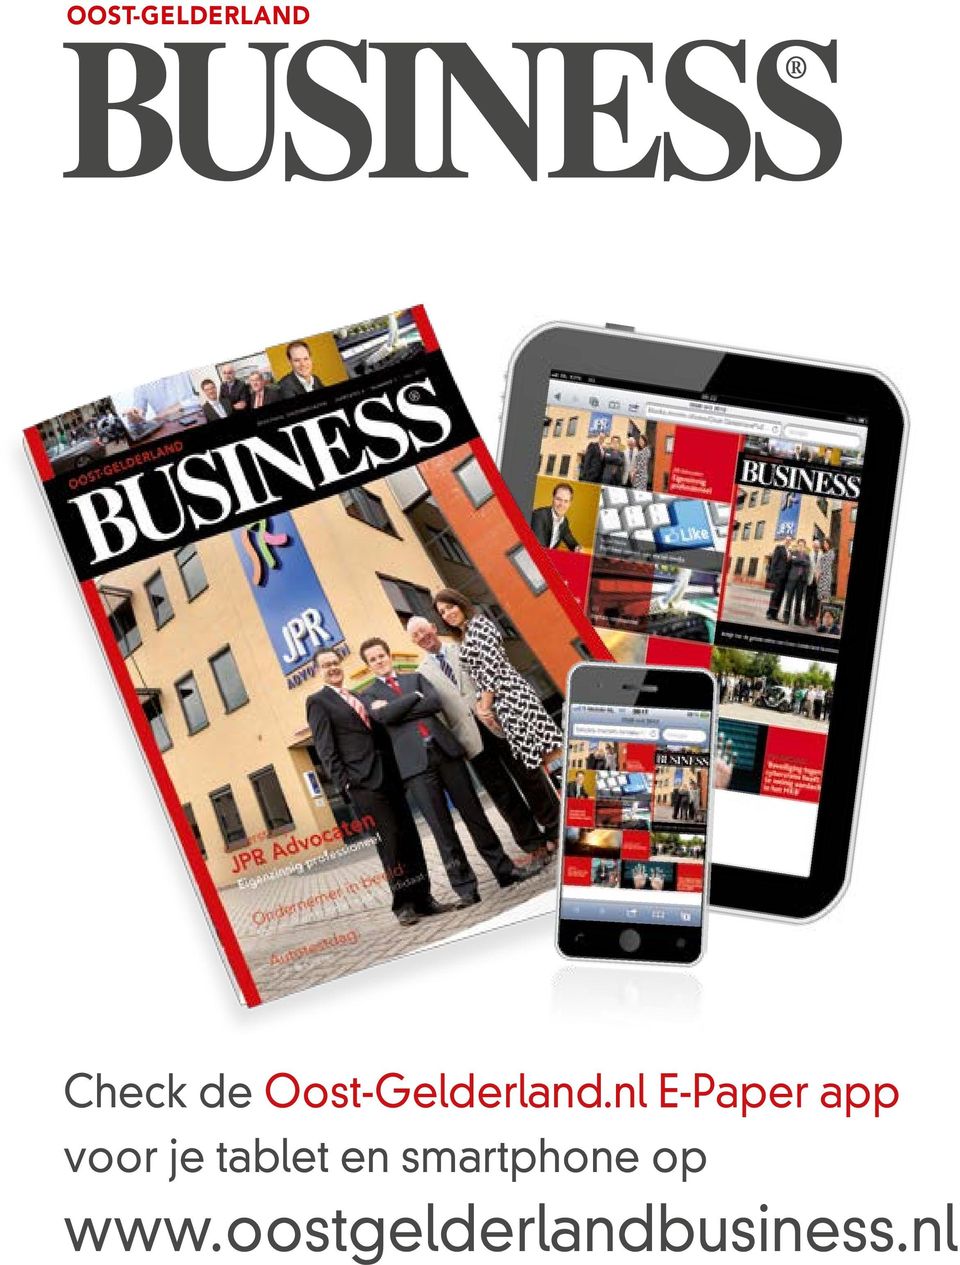 nl E-Paper app voor je tablet